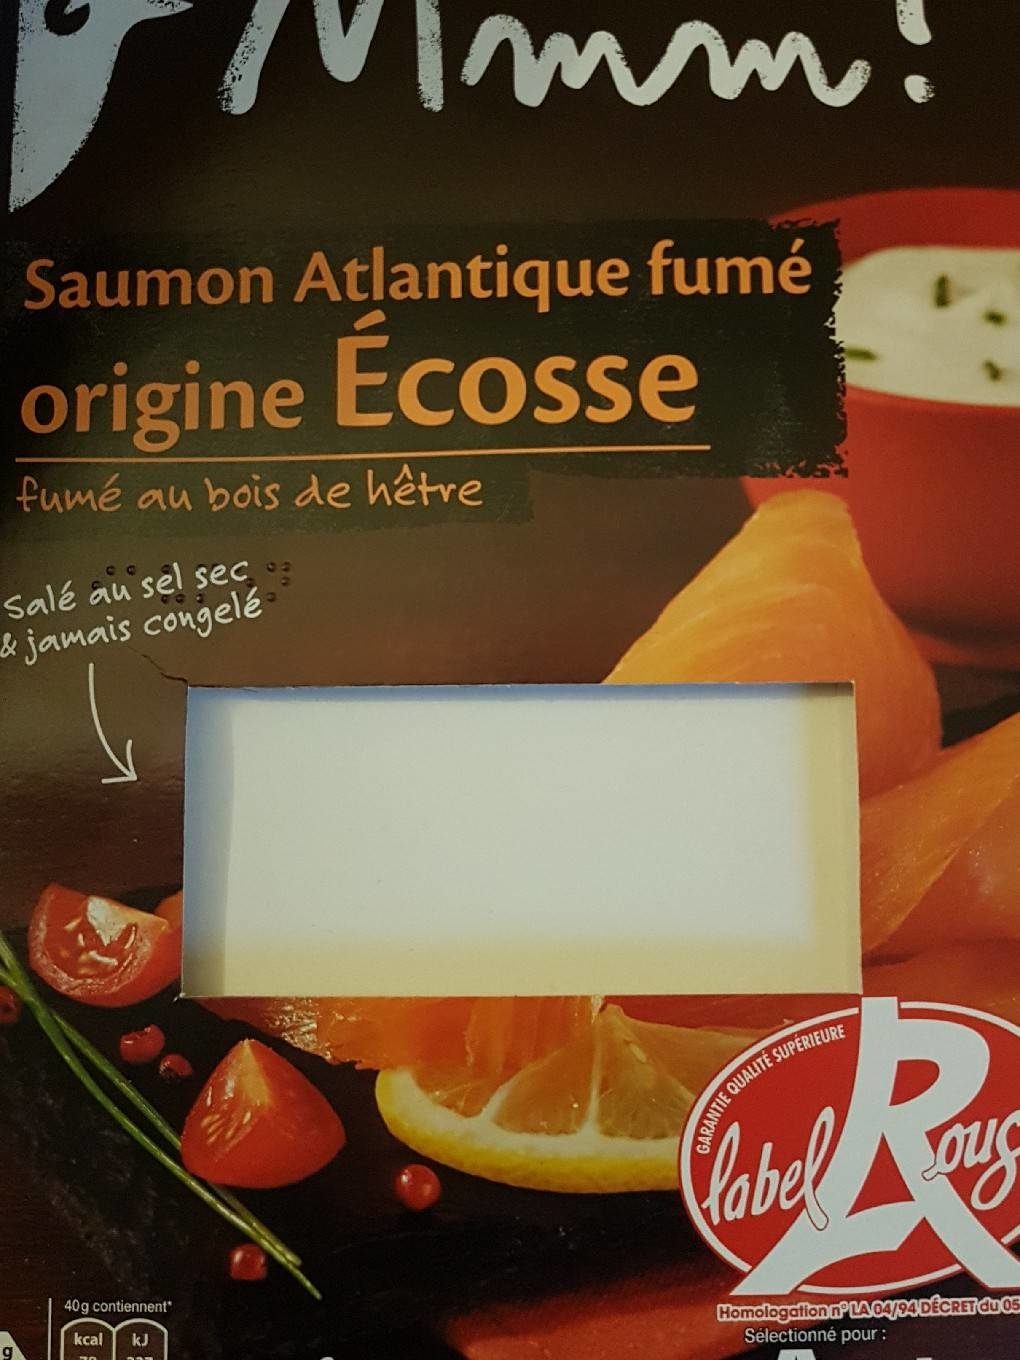 Saumon Atlantique fumé origine Ecosse - Product - fr